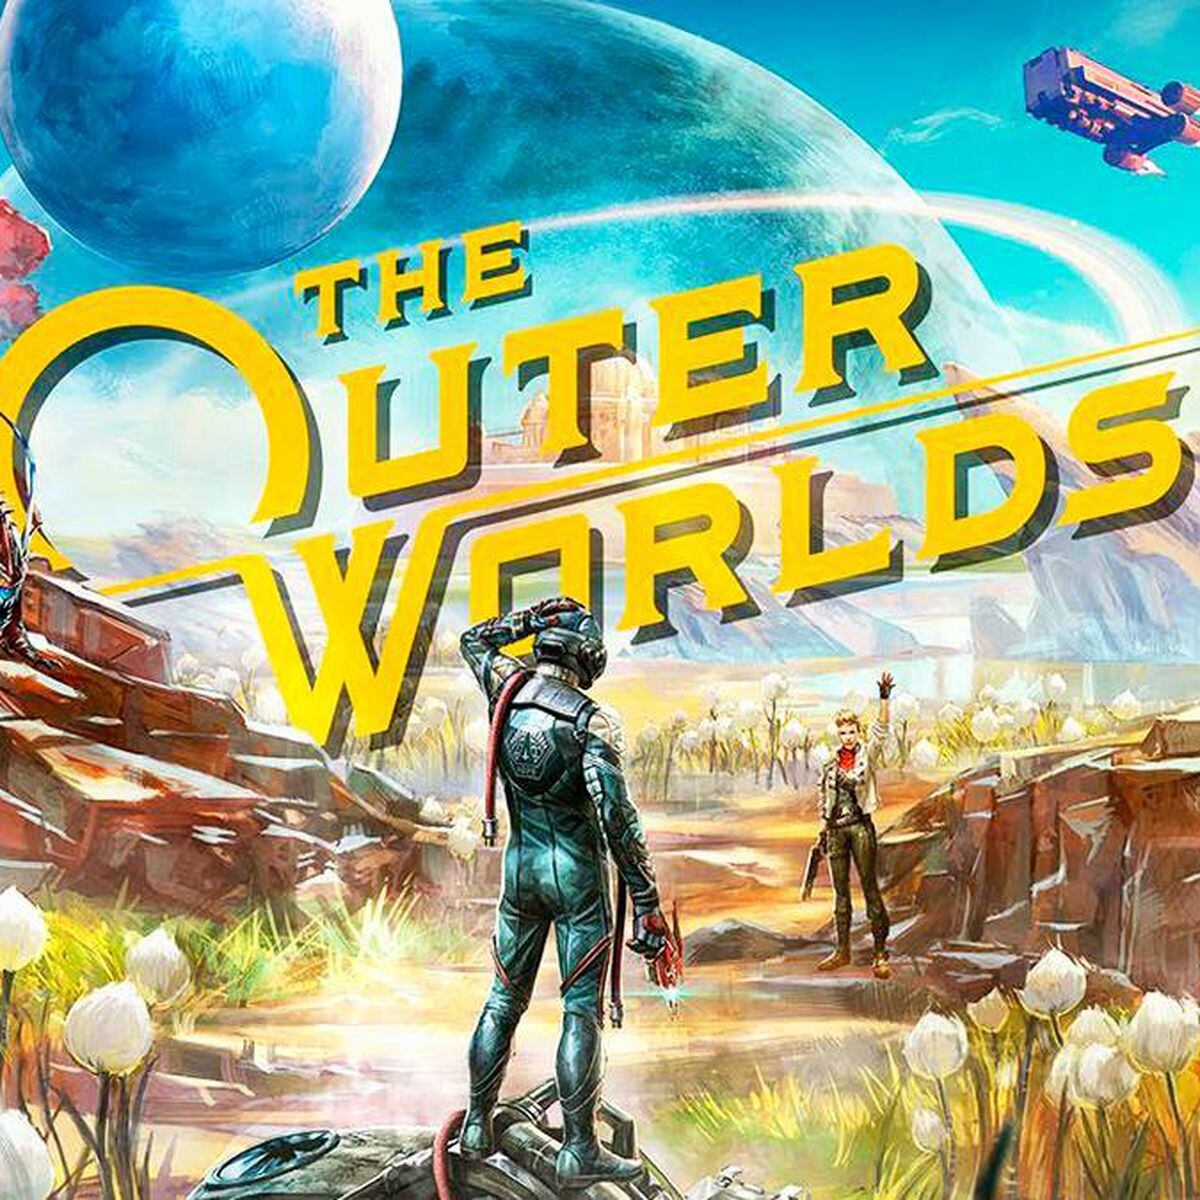 Análisis de The Outer Worlds, la aventura espacial para PS4, One y PC